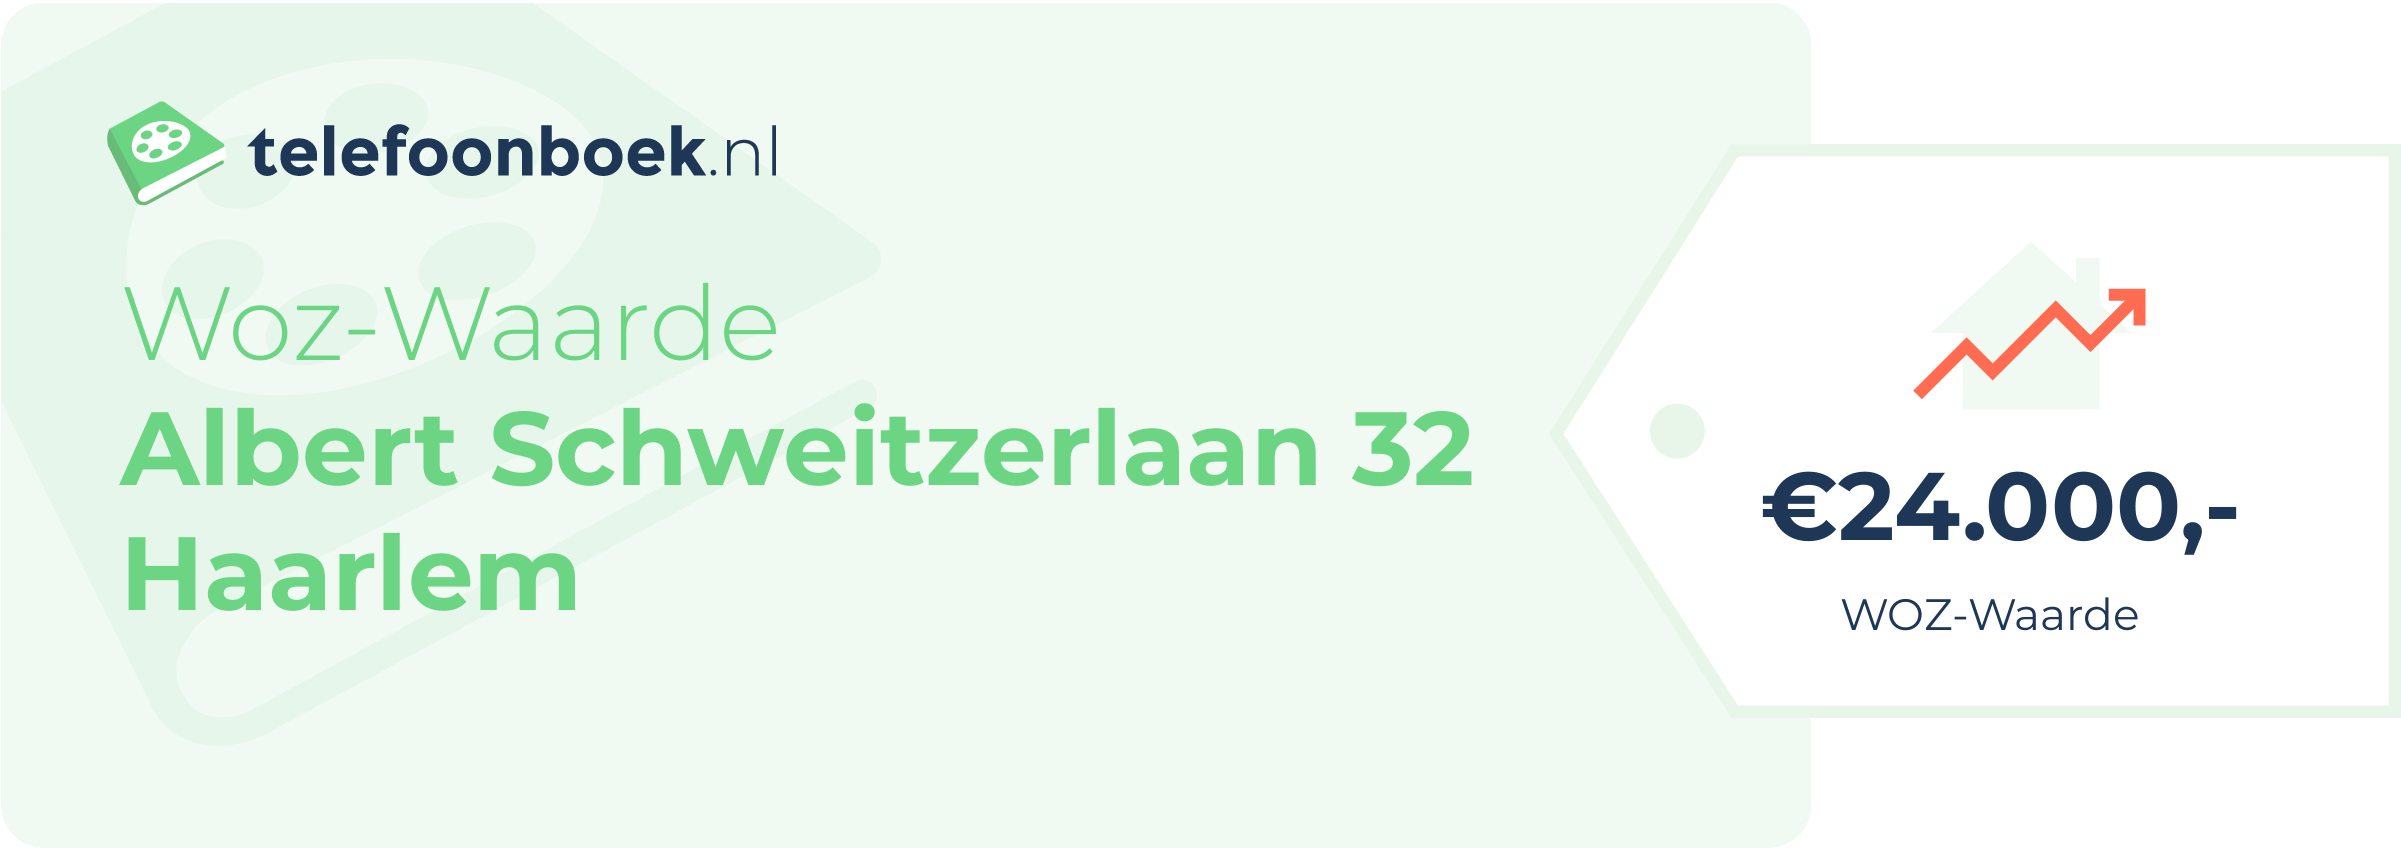 WOZ-waarde Albert Schweitzerlaan 32 Haarlem